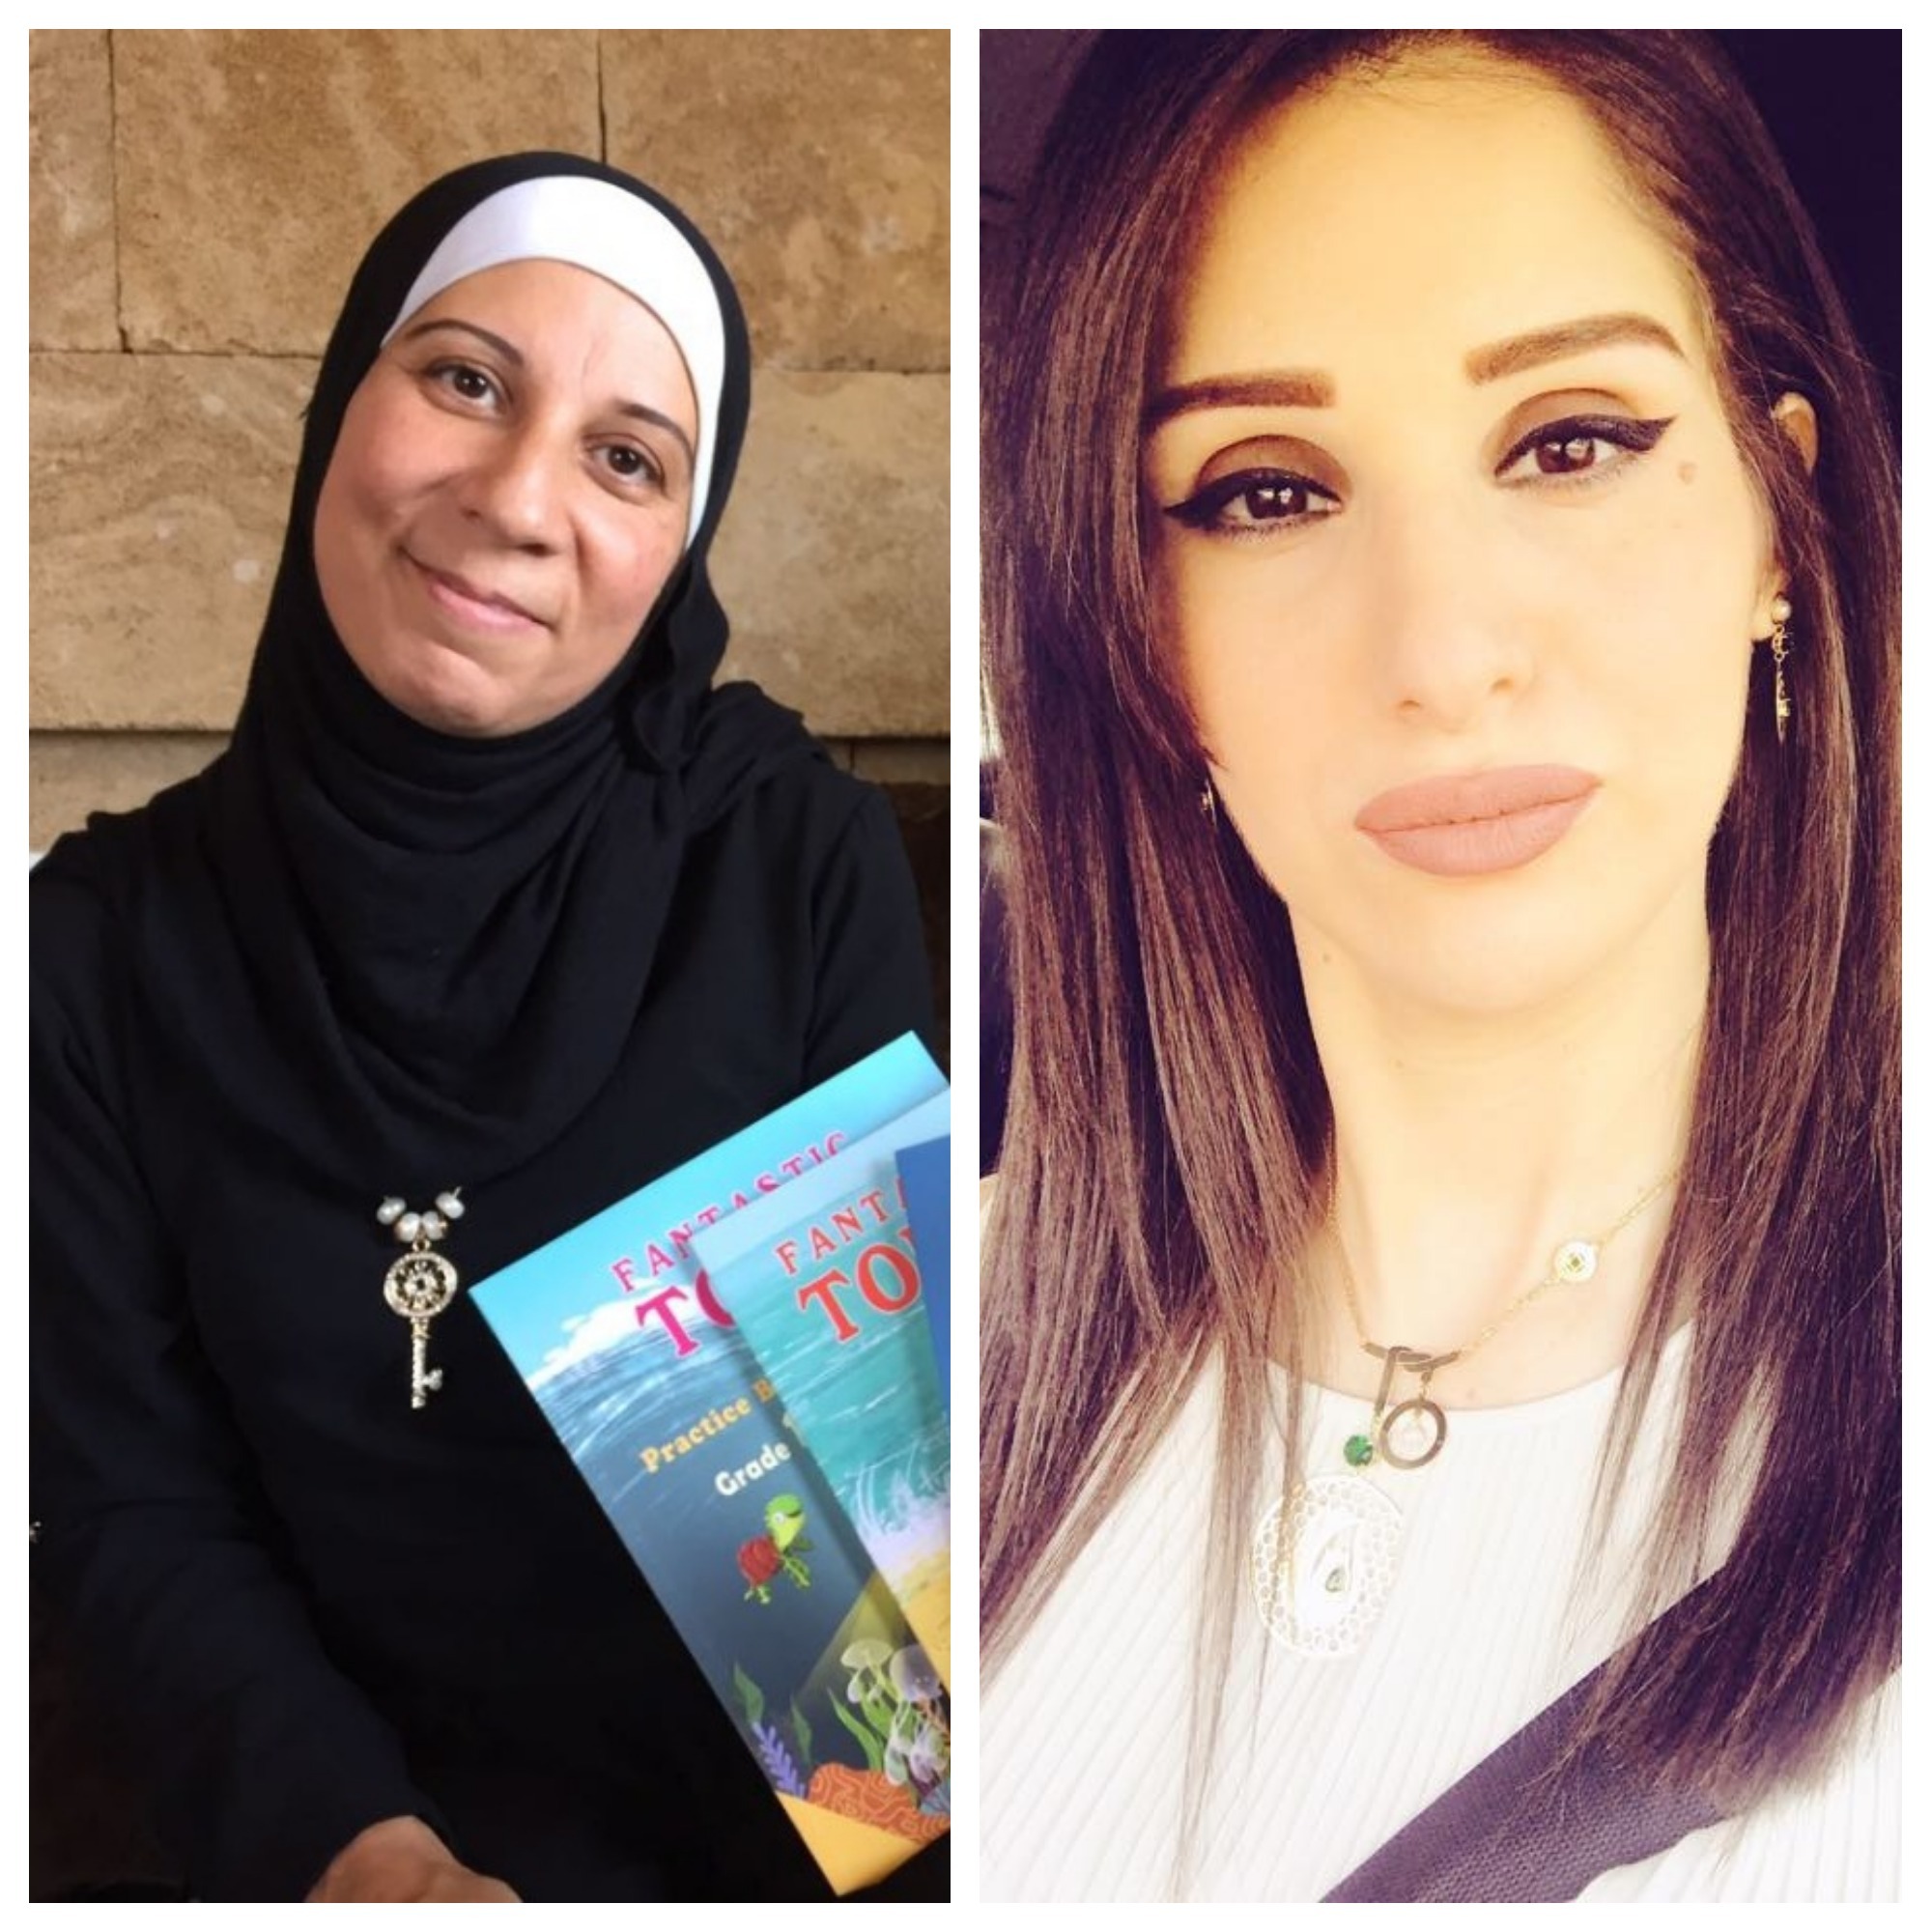 رانيا سلمان مبارك وجويل روماني رمال تساهمان في تأليف سلسلة كتب مدرسية للغة الإنكليزية للحلقة الأولى.